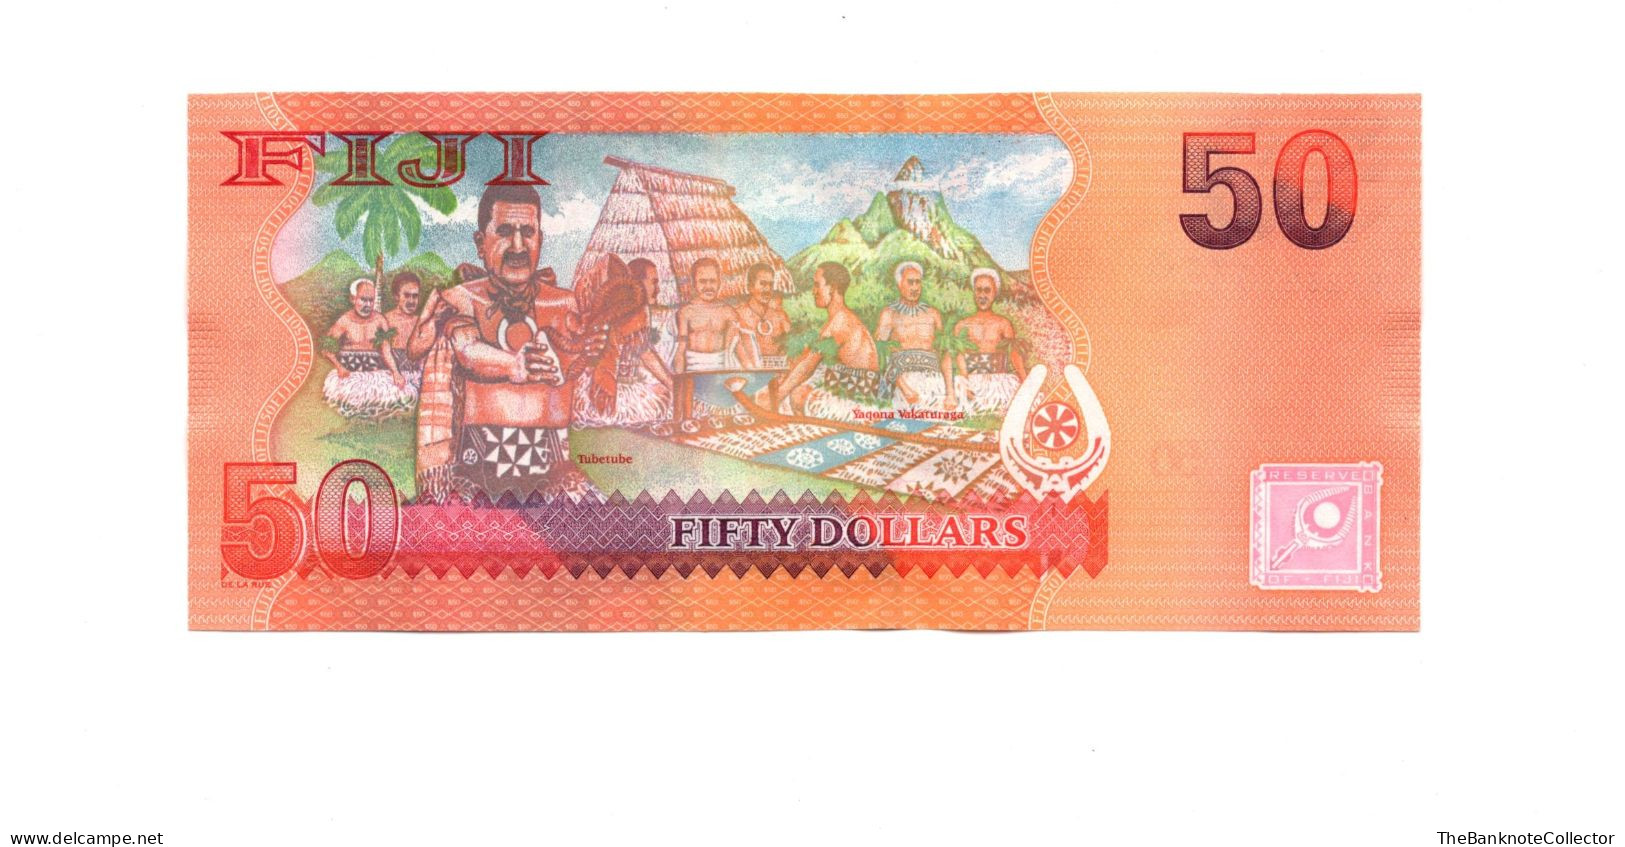 Fiji 50 Dollars 2012 (2013) P-118 UNC - Fiji